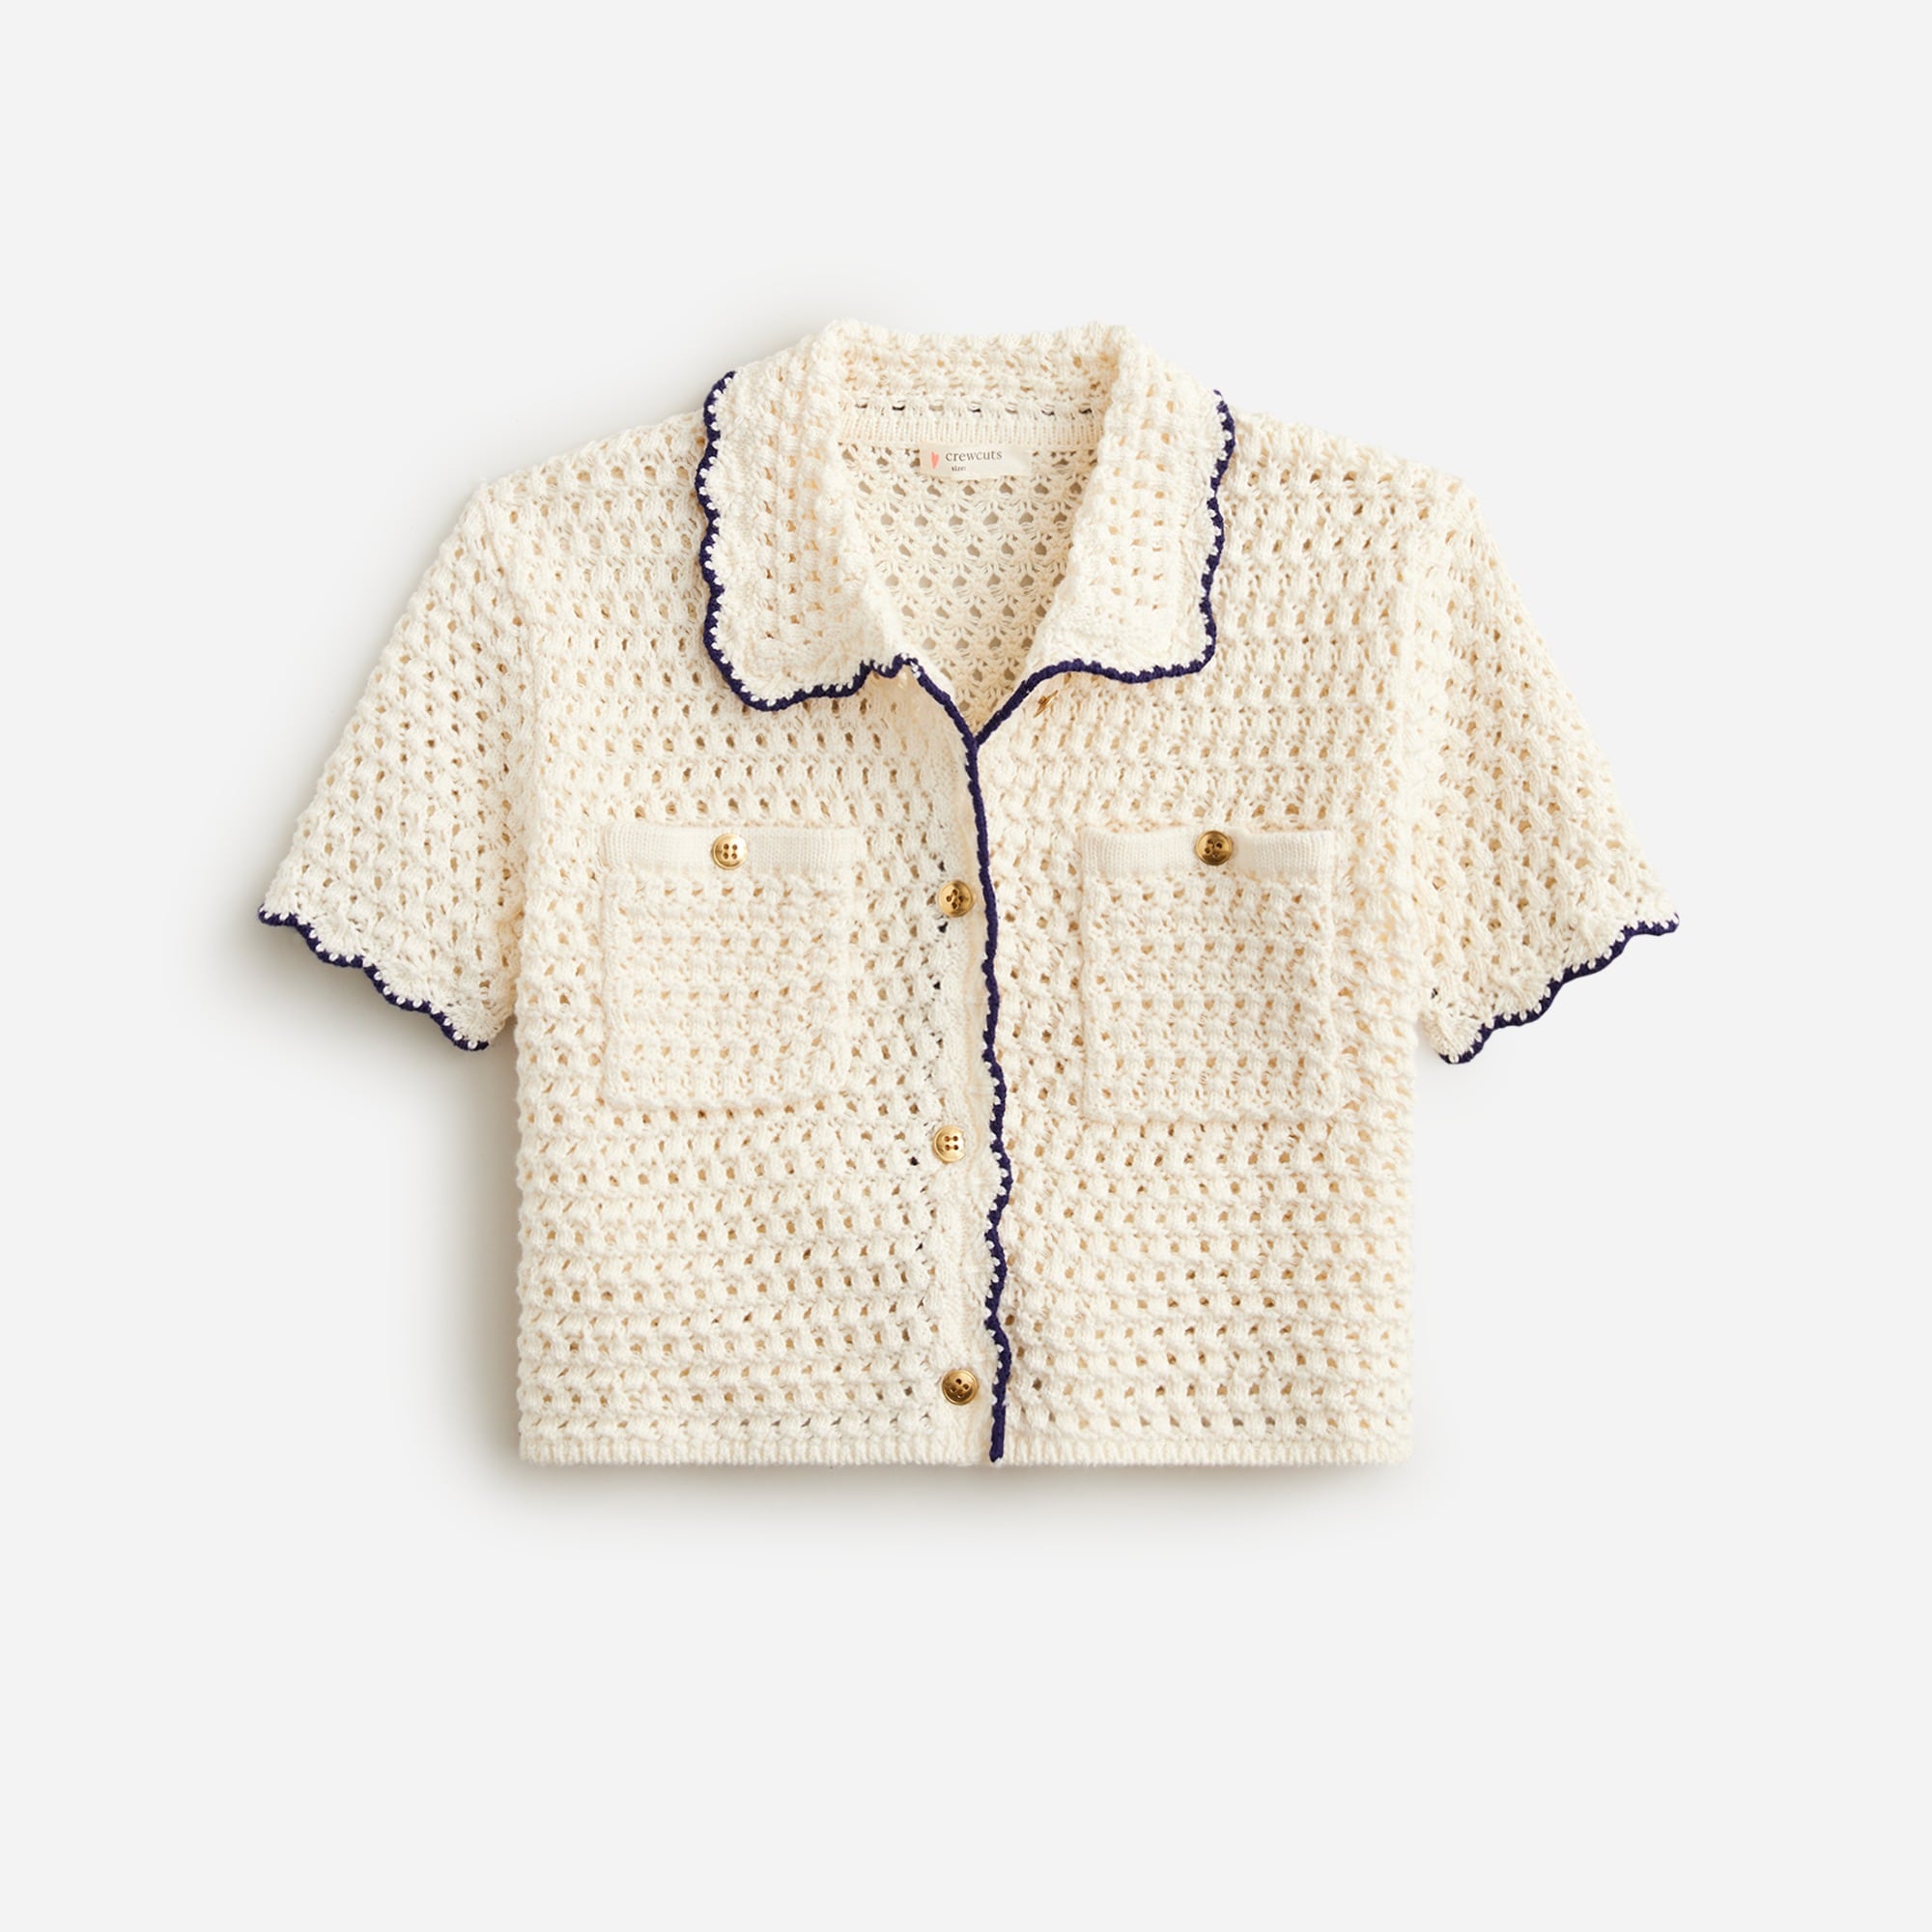  Girls' crochet button-up shirt